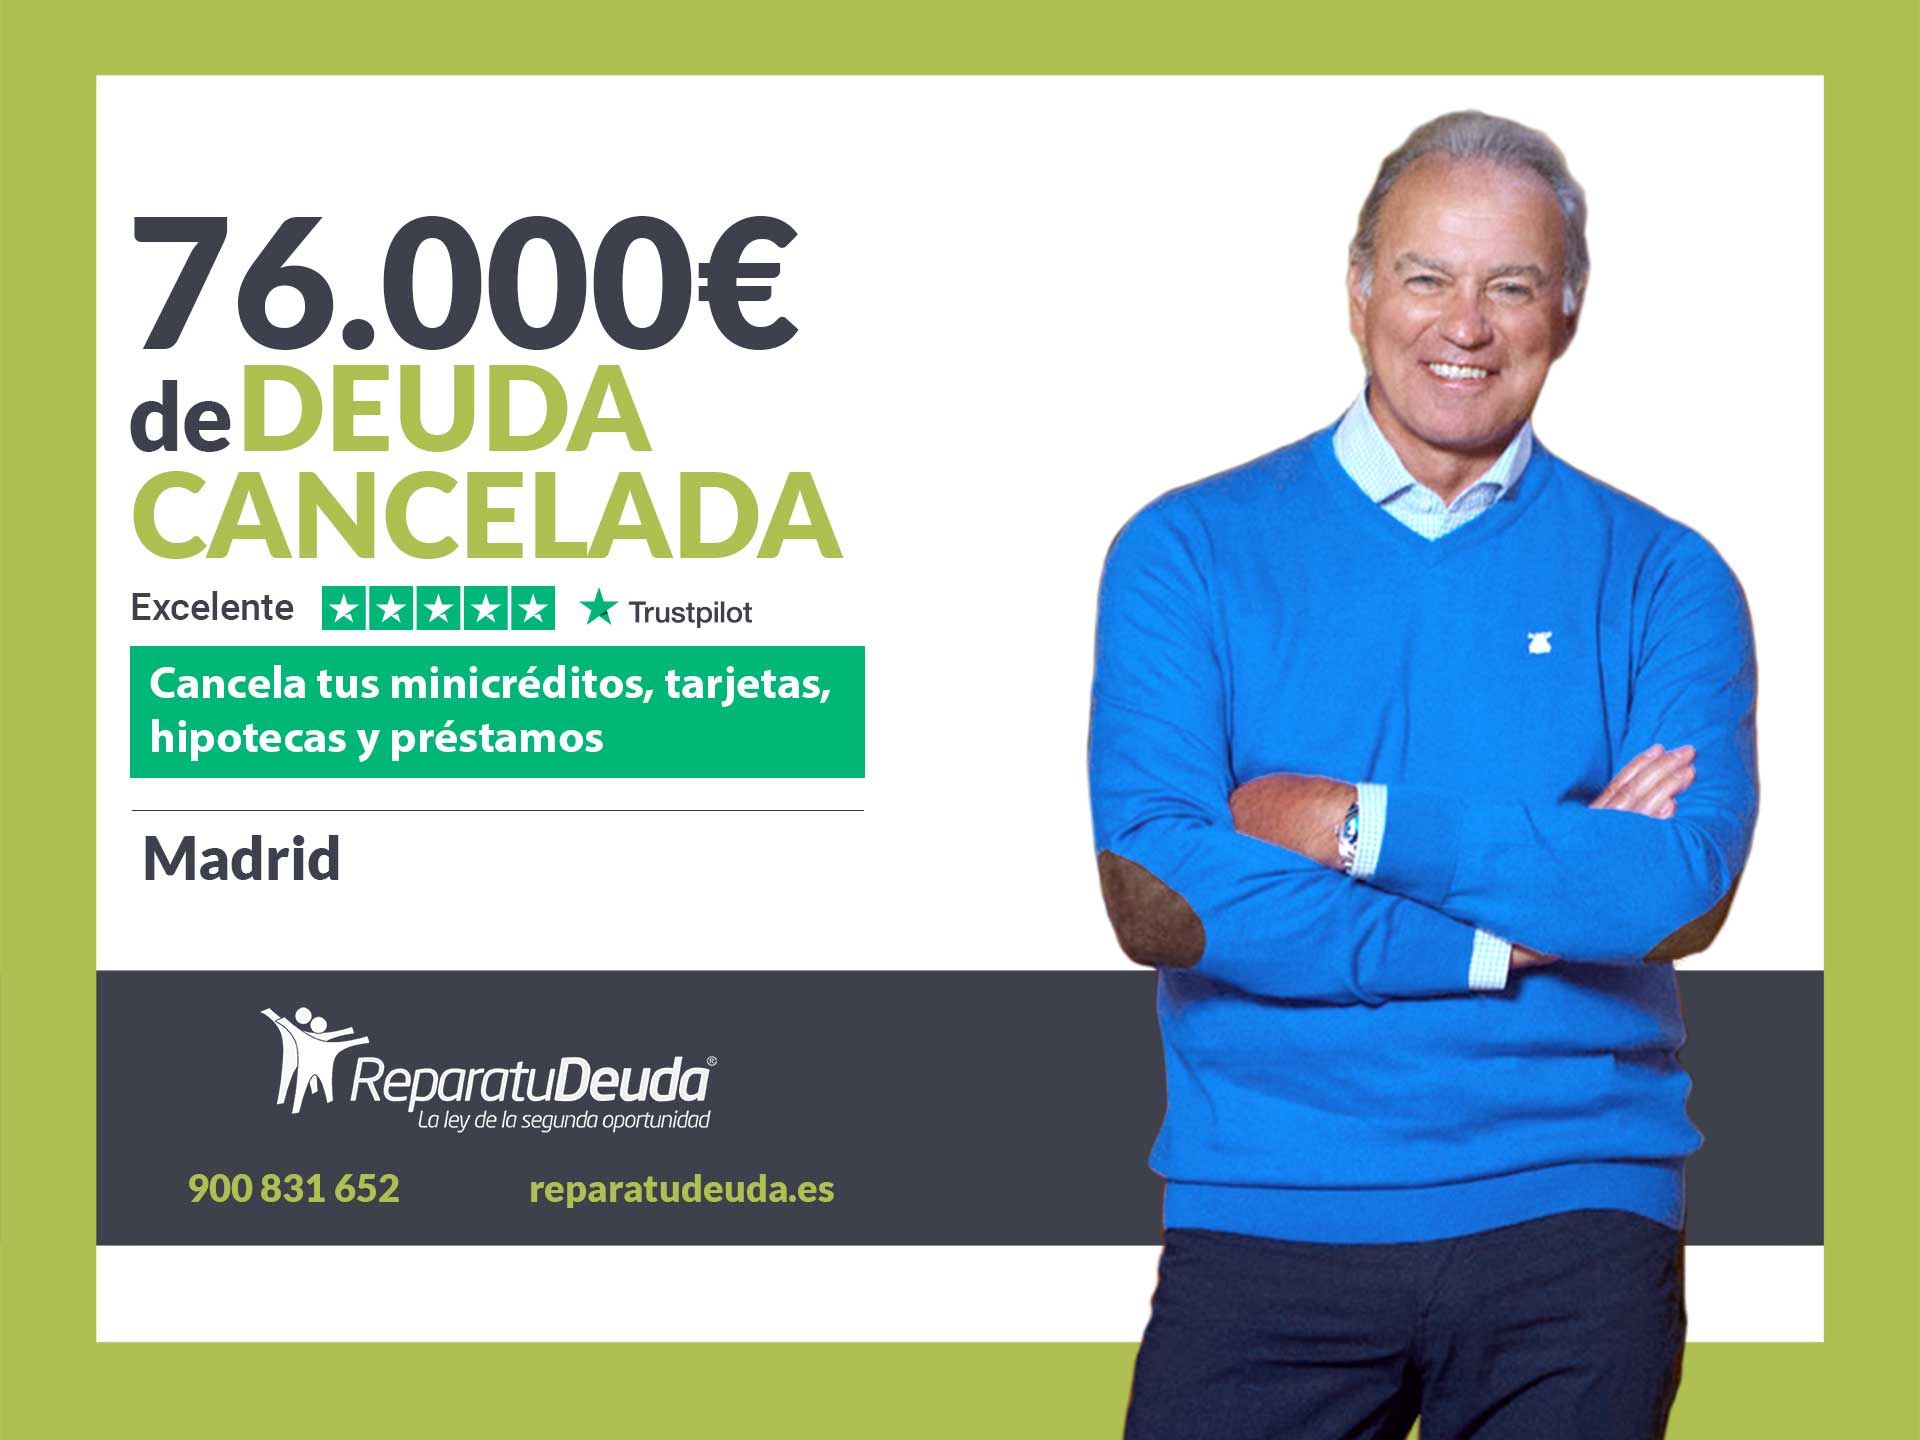 Repara tu Deuda Abogados cancela 76.000? en Madrid con la Ley de Segunda Oportunidad